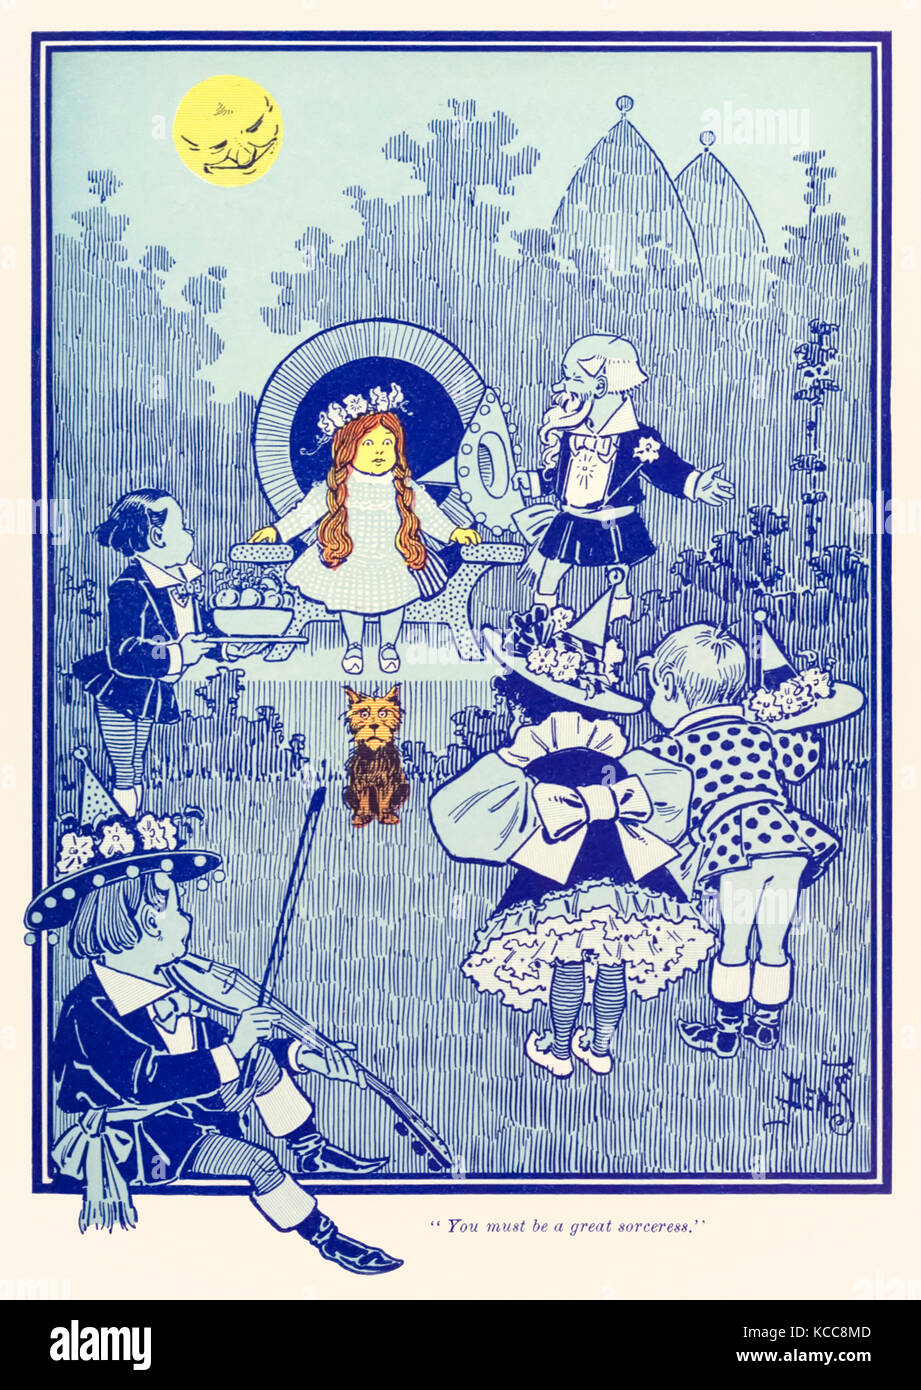 "Vous devez être une grande sorcière." de "The Wonderful Wizard of Oz' par L. Frank Baum (1856-1919) avec des photos de W. W. Denslow (1856-1915). Voir plus d'informations ci-dessous. Banque D'Images